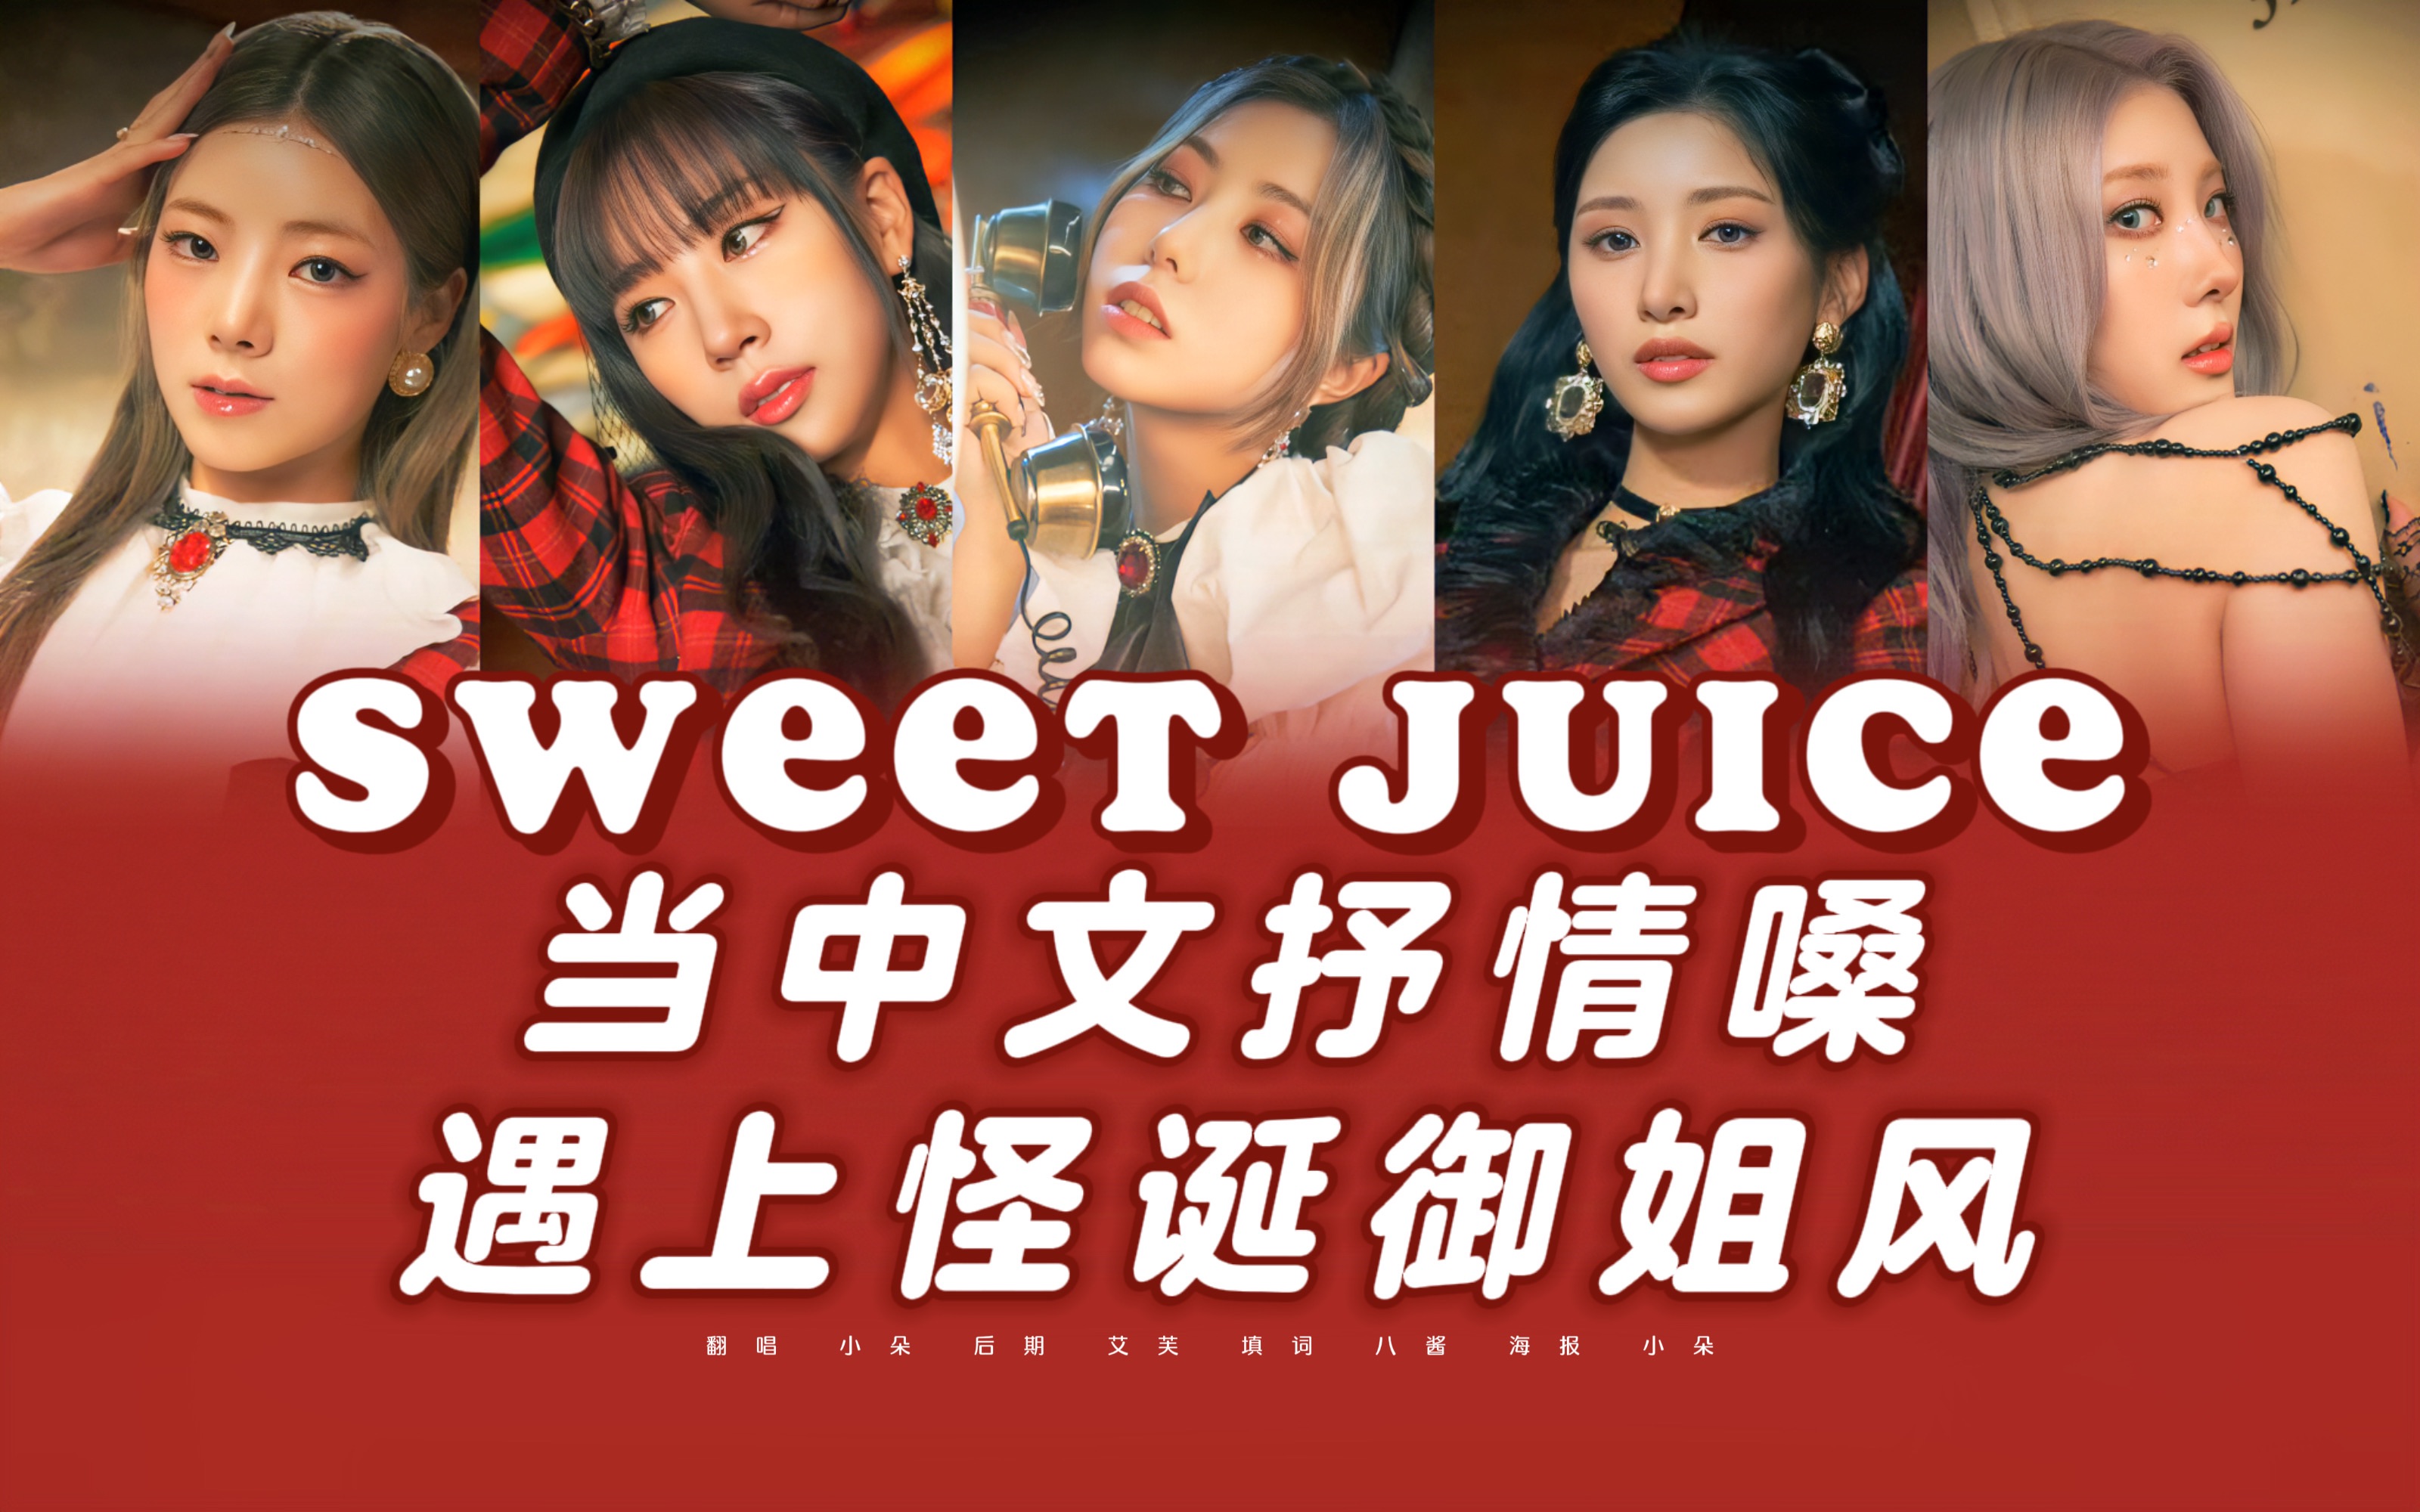 【Sweet juice】当超怪诞中文填词和性感抒情嗓的适配度居然这么高？惊住我了！